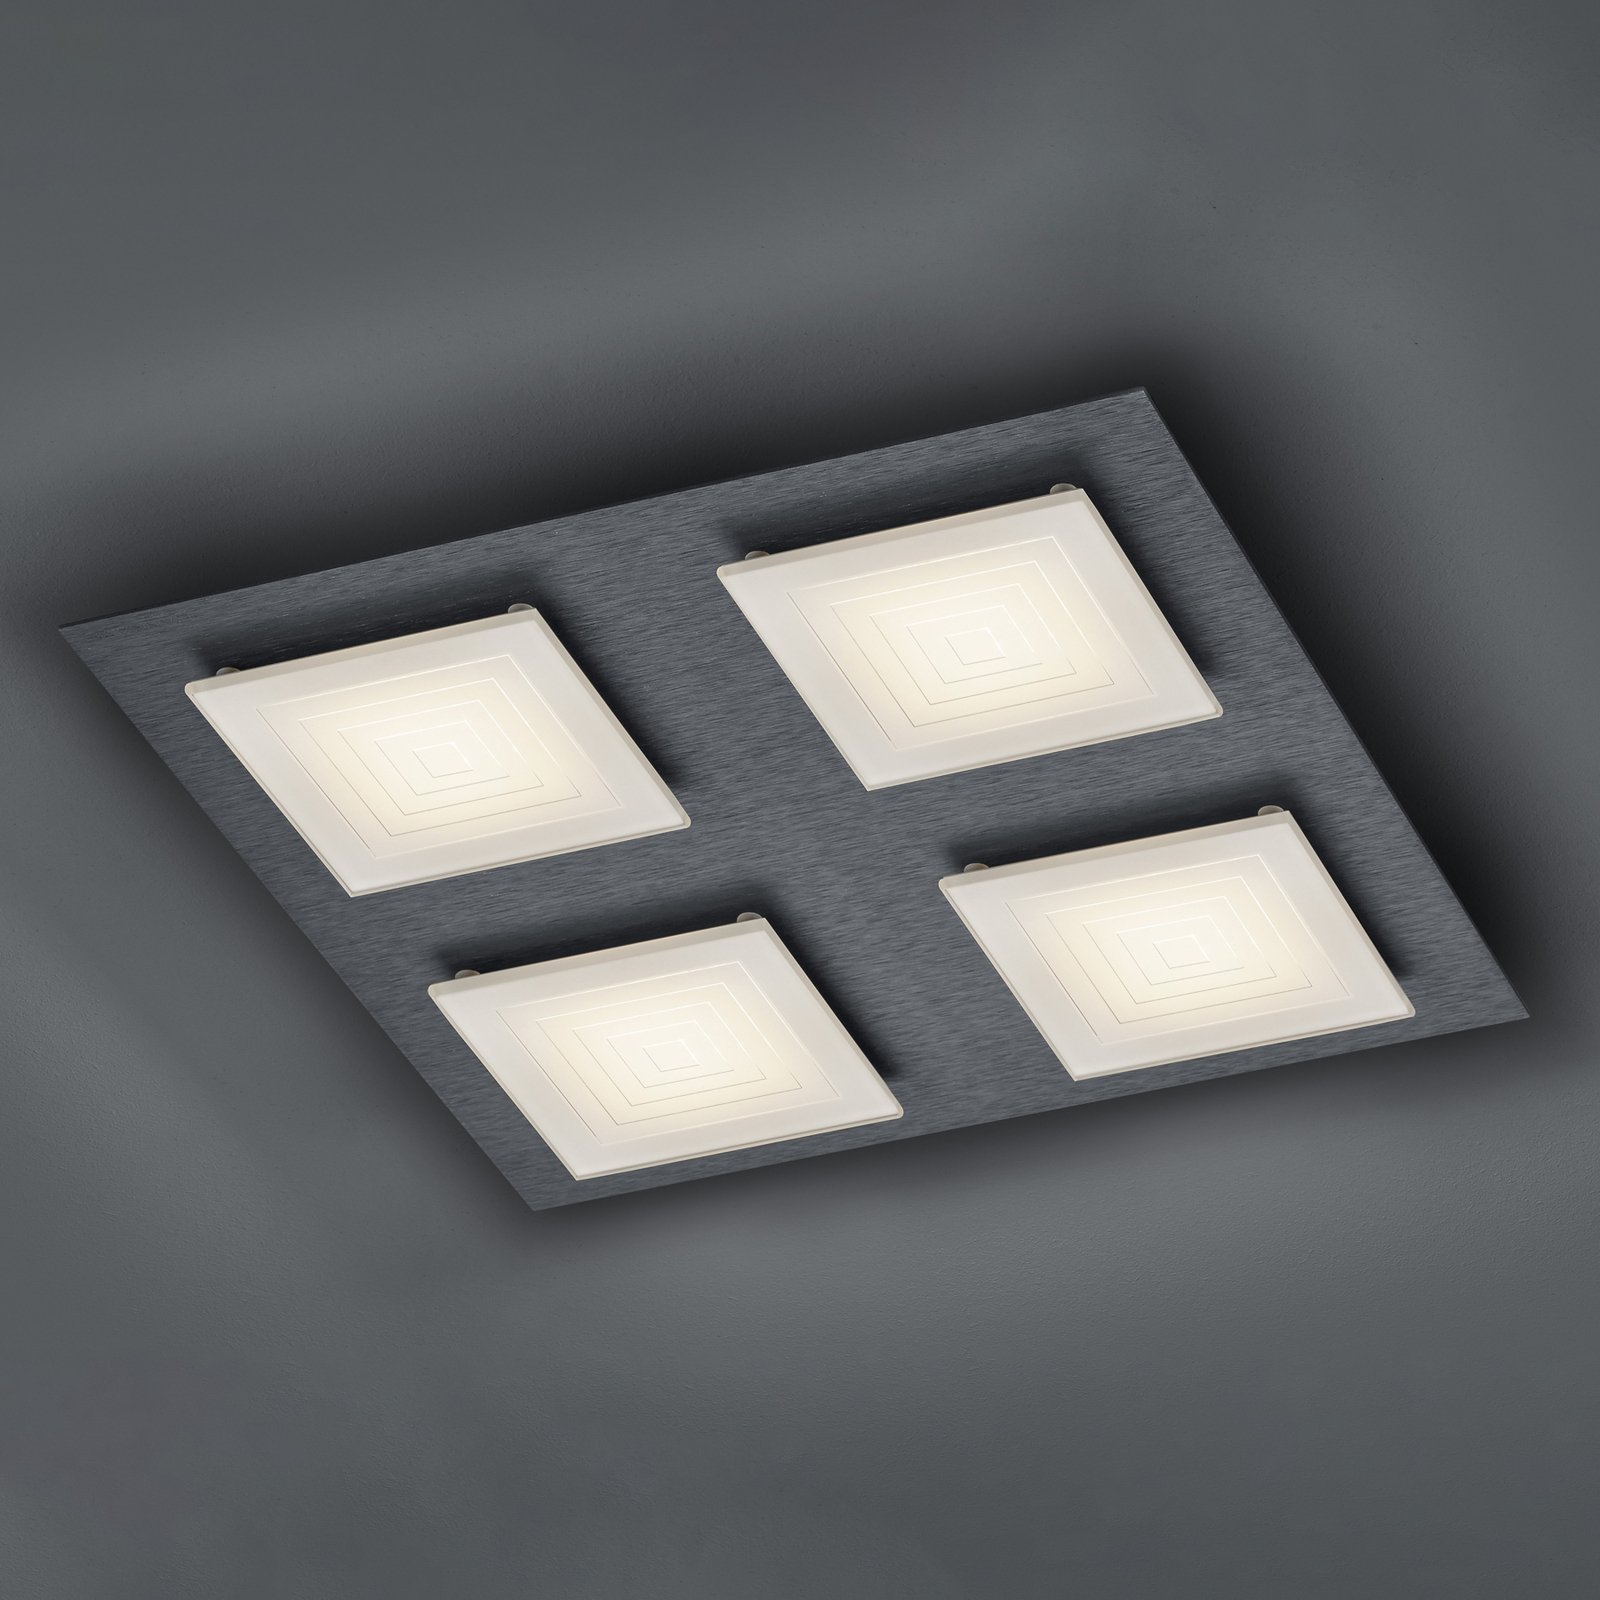 BANKAMP Ino LED ceiling light 4-bulb anthracite